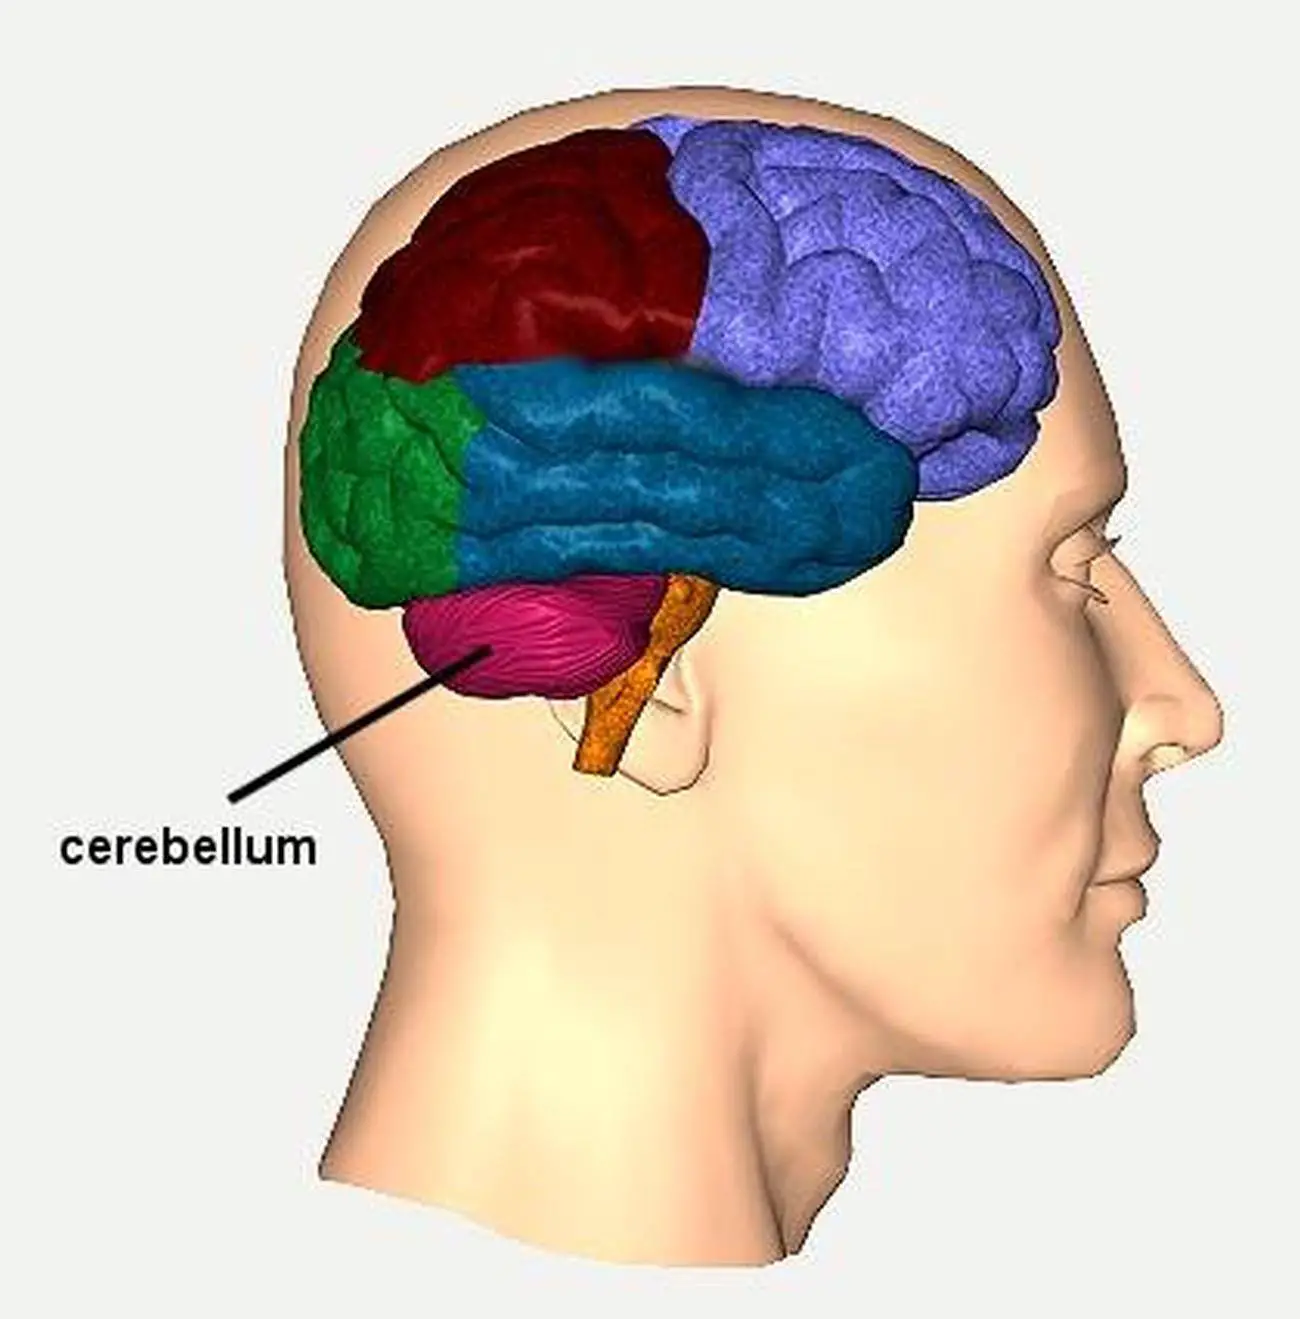 Pictures Of Cerebellum